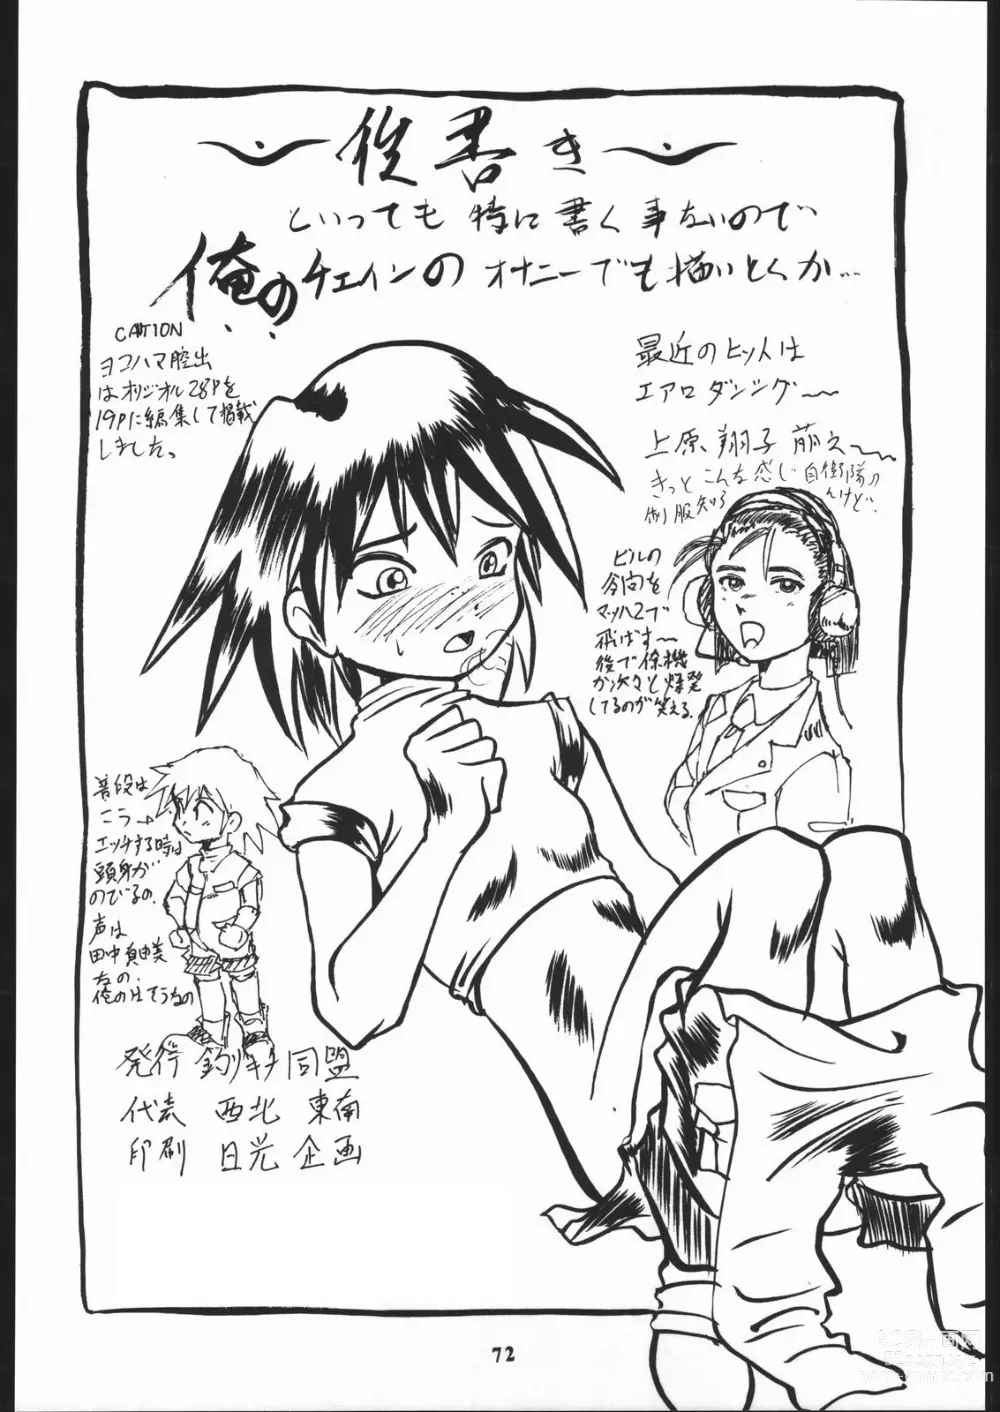 Page 73 of doujinshi Super Robokko Taisen